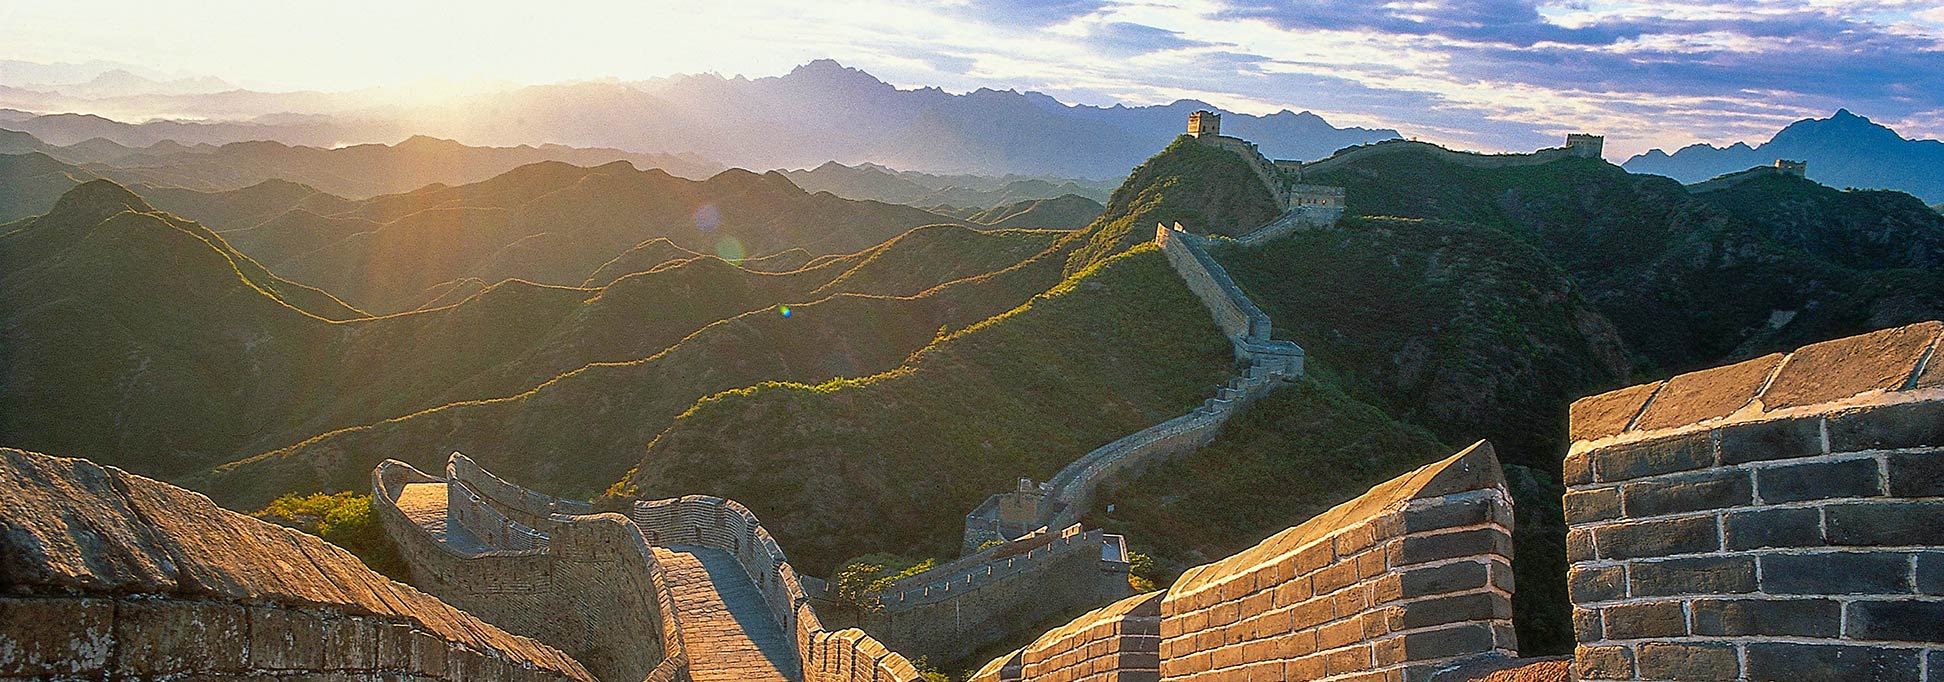 Tường thành dài nhất Trung Quốc Vạn Lý Trường Thành